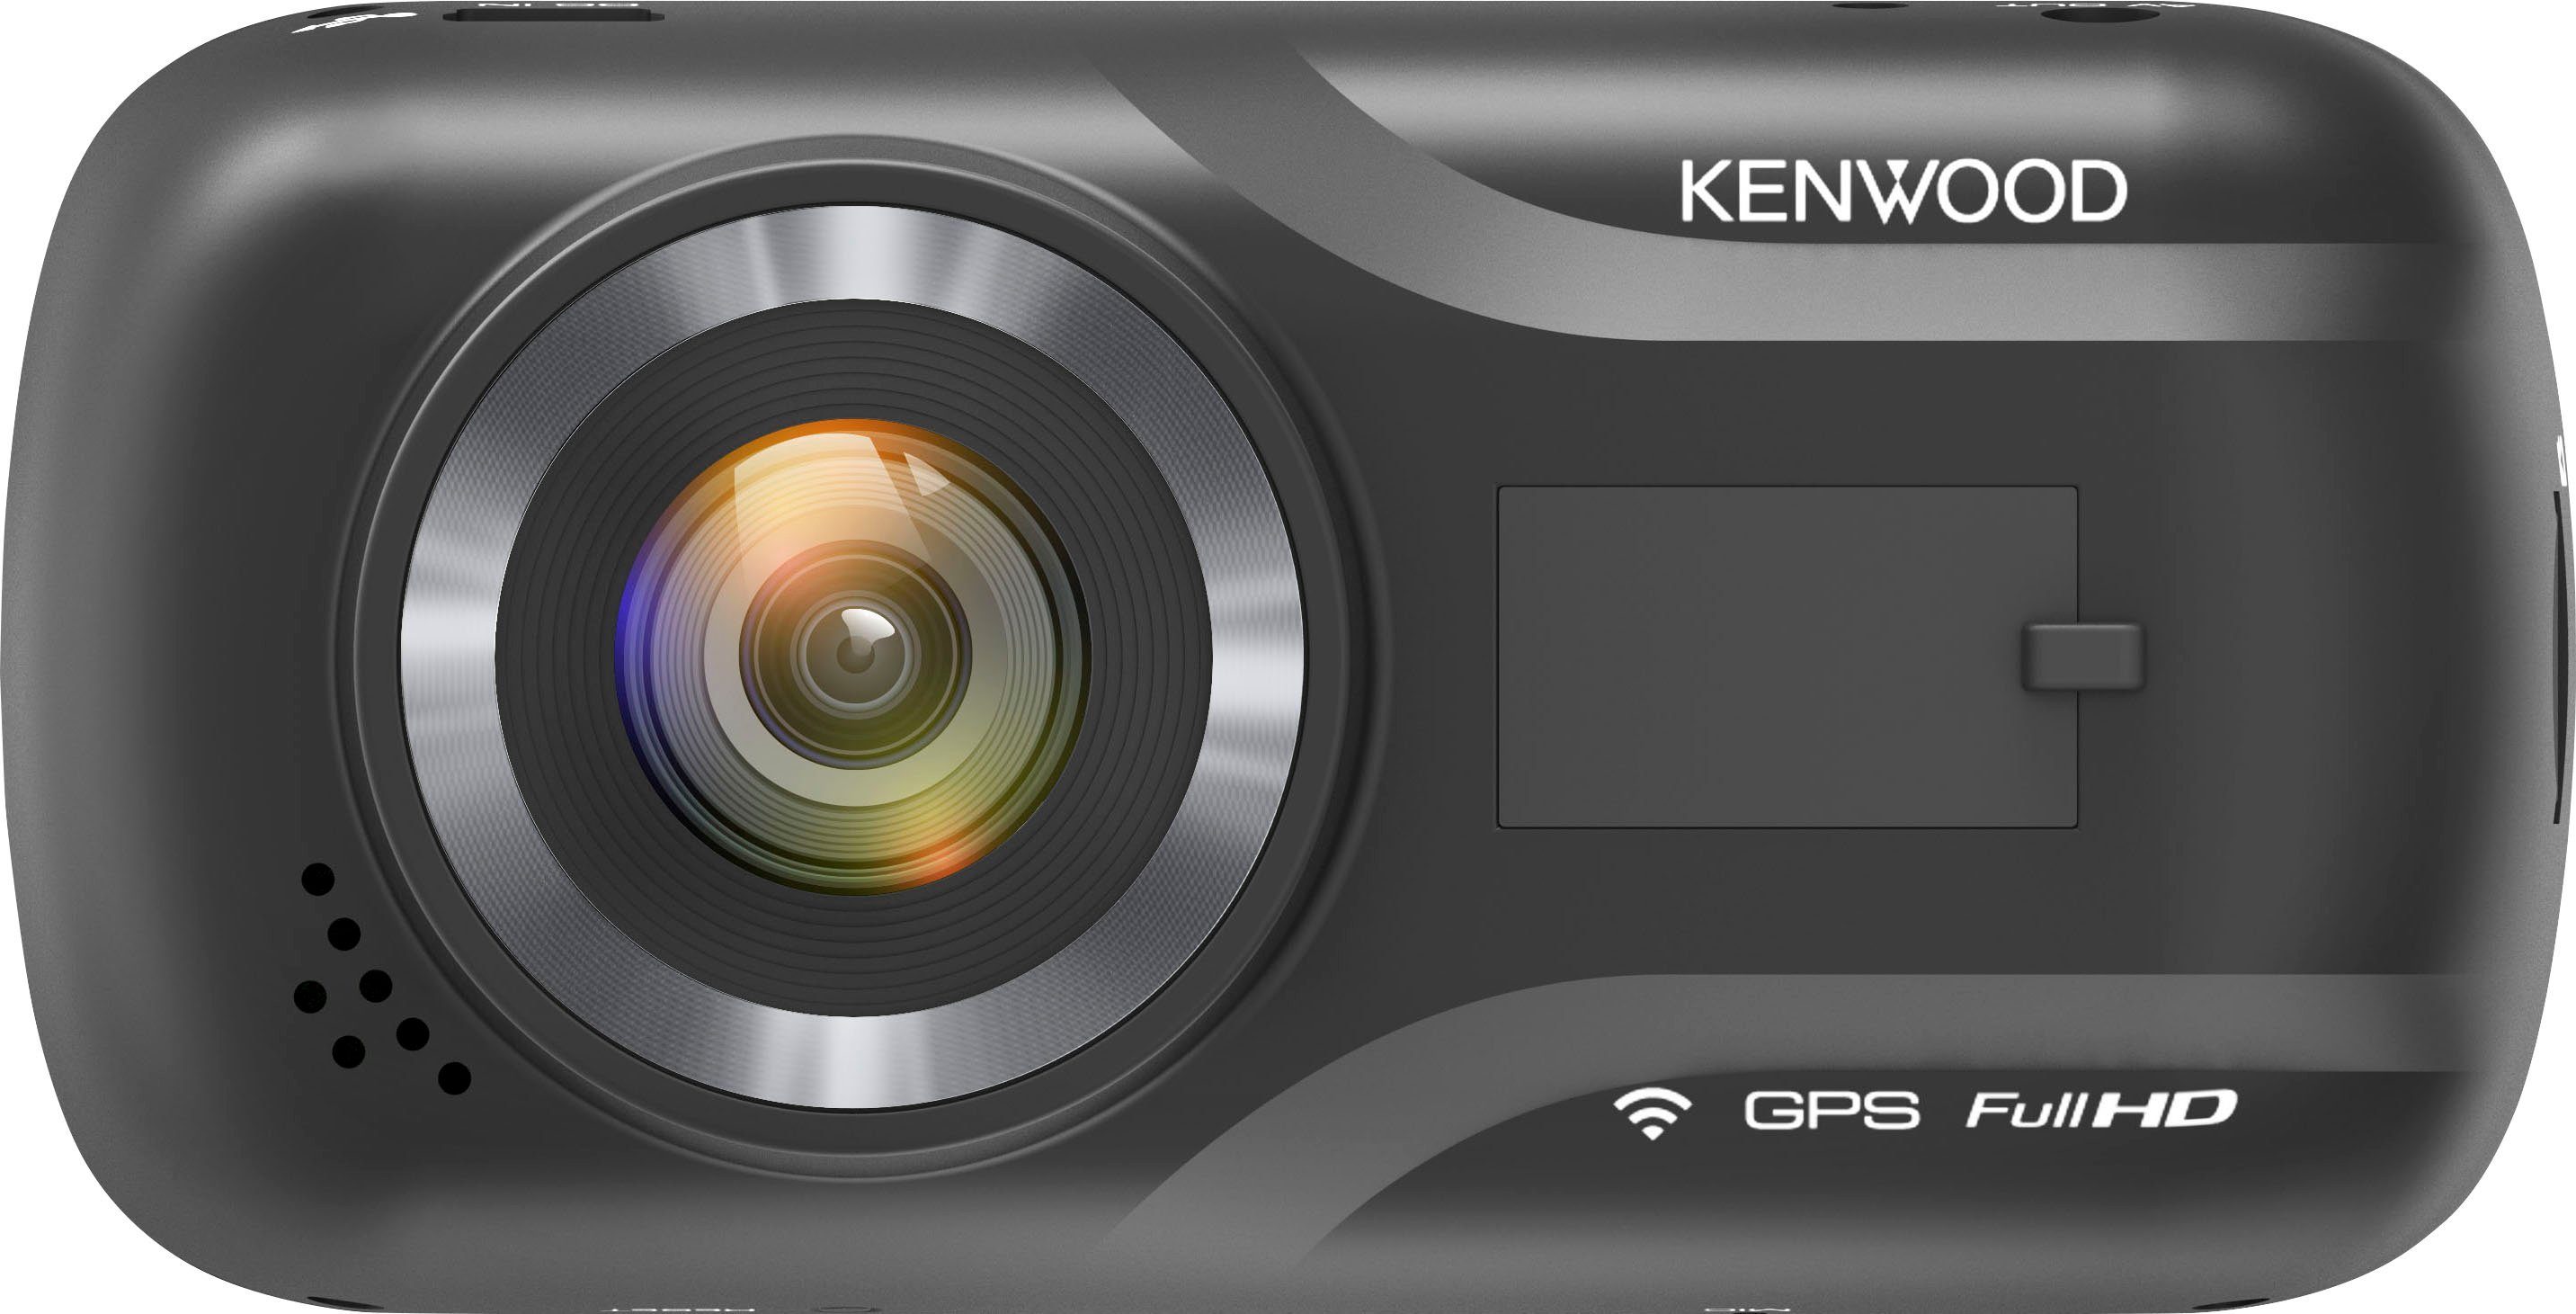 Kenwood DRV-A301W Dashcam (Full HD, (Wi-Fi) WLAN